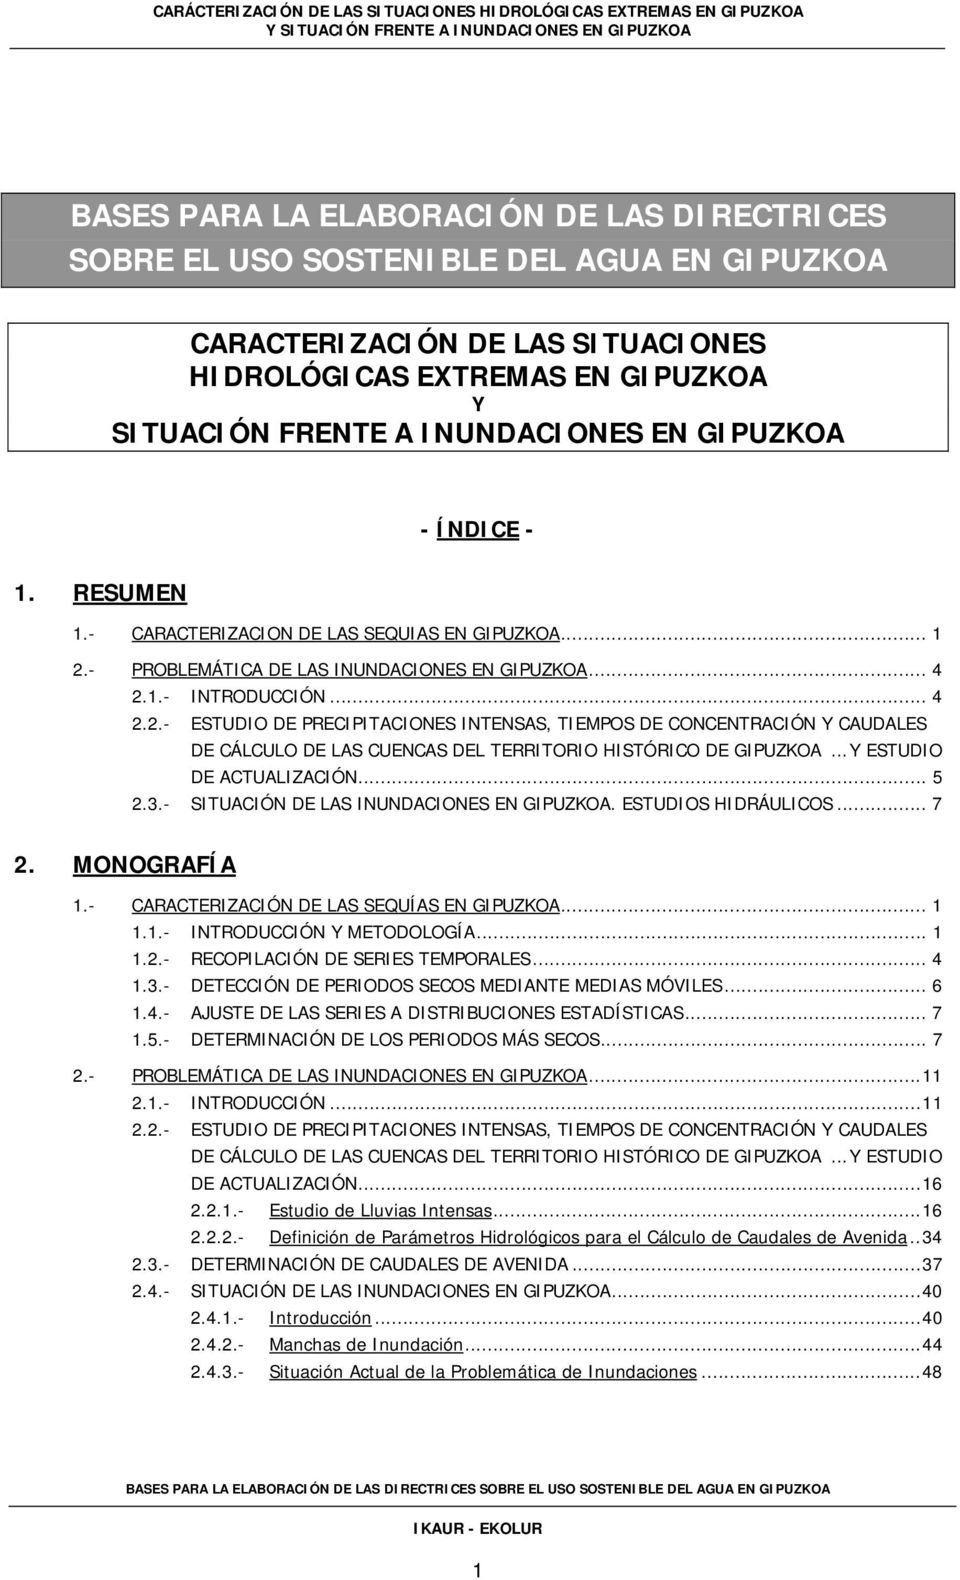 - PROBLEMÁTICA DE LAS INUNDACIONES EN GIPUZKOA... 4 2.1.- INTRODUCCIÓN... 4 2.2.- ESTUDIO DE PRECIPITACIONES INTENSAS, TIEMPOS DE CONCENTRACIÓN Y CAUDALES DE CÁLCULO DE LAS CUENCAS DEL TERRITORIO HISTÓRICO DE GIPUZKOA.